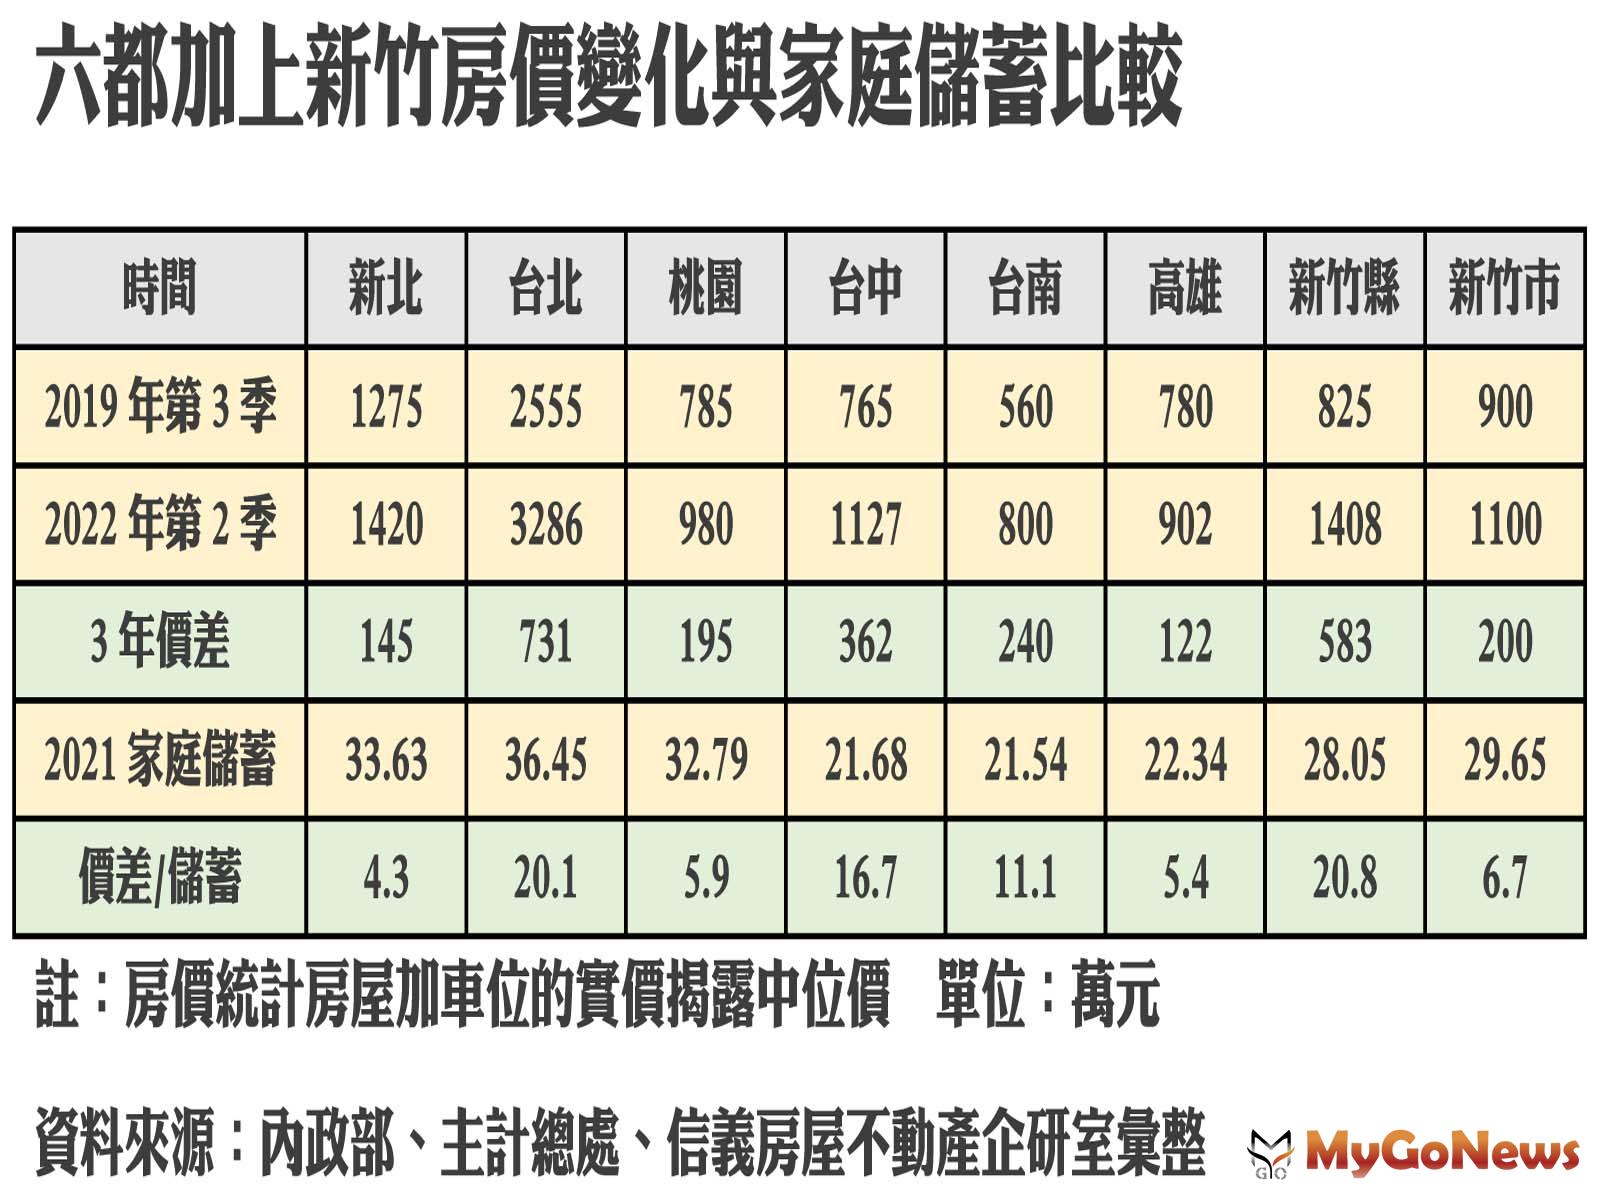 六都加上新竹房價變化與家庭儲蓄比較 MyGoNews房地產新聞 趨勢報導